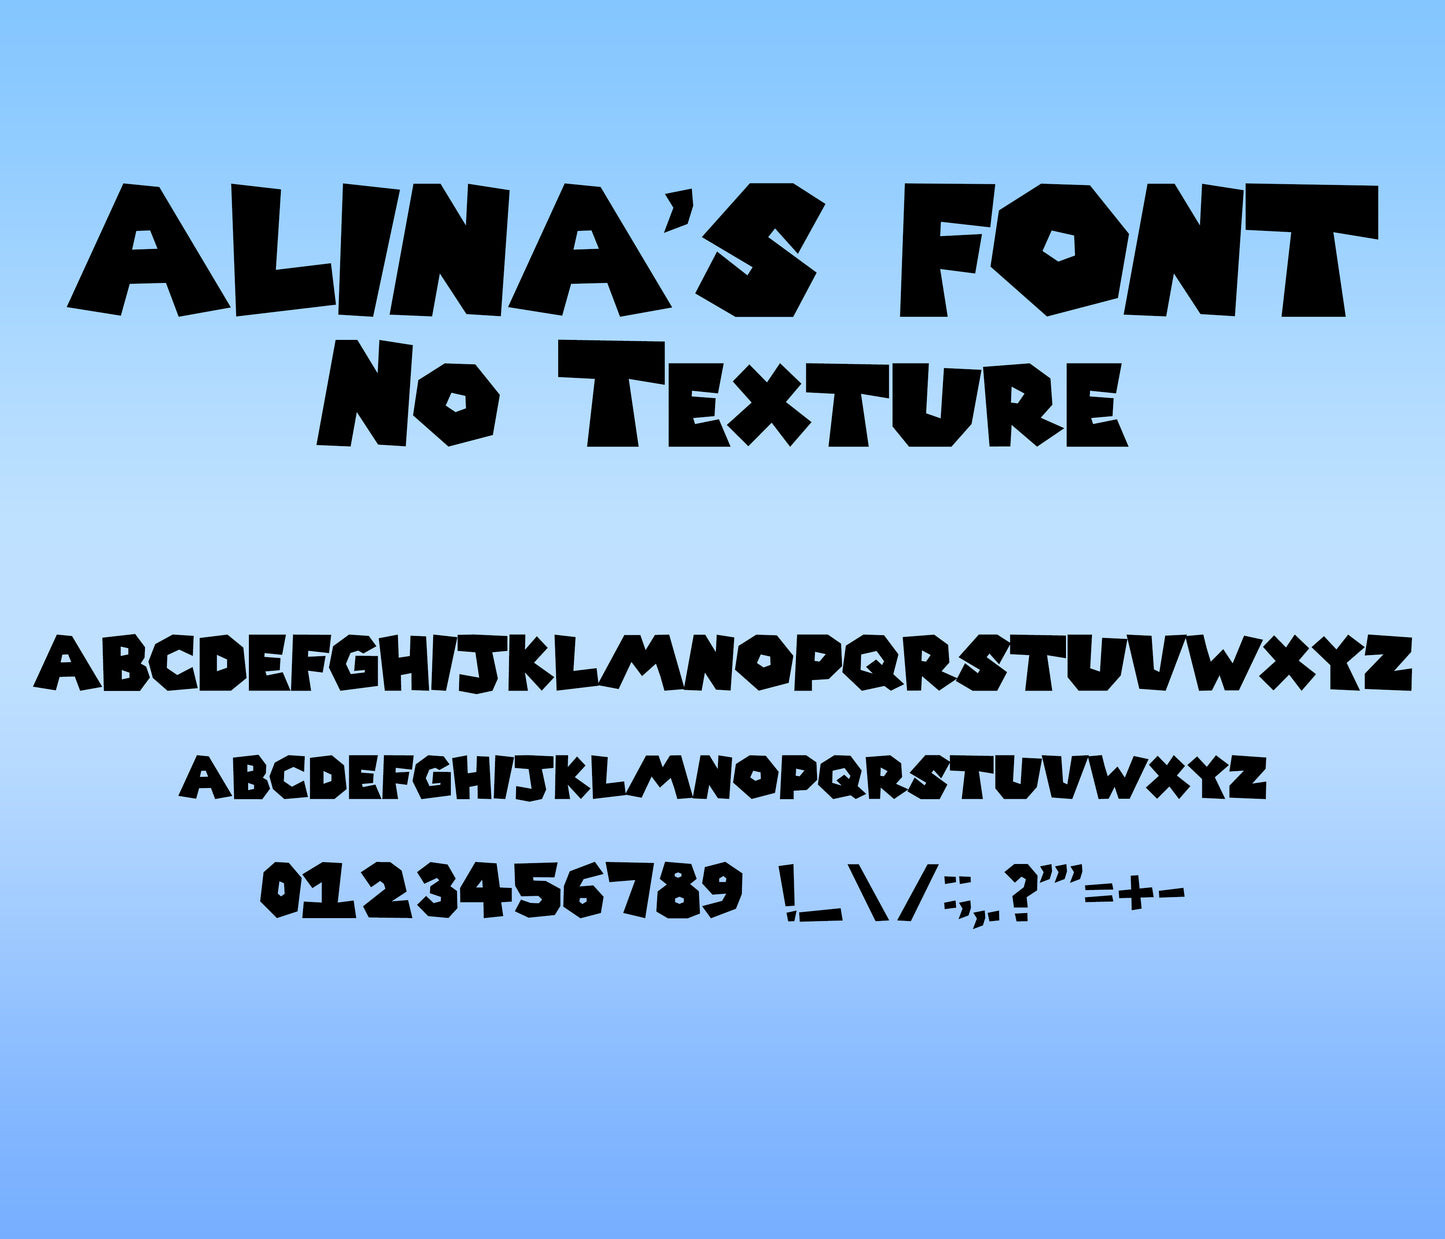 Super Mario Bros. Textured Font